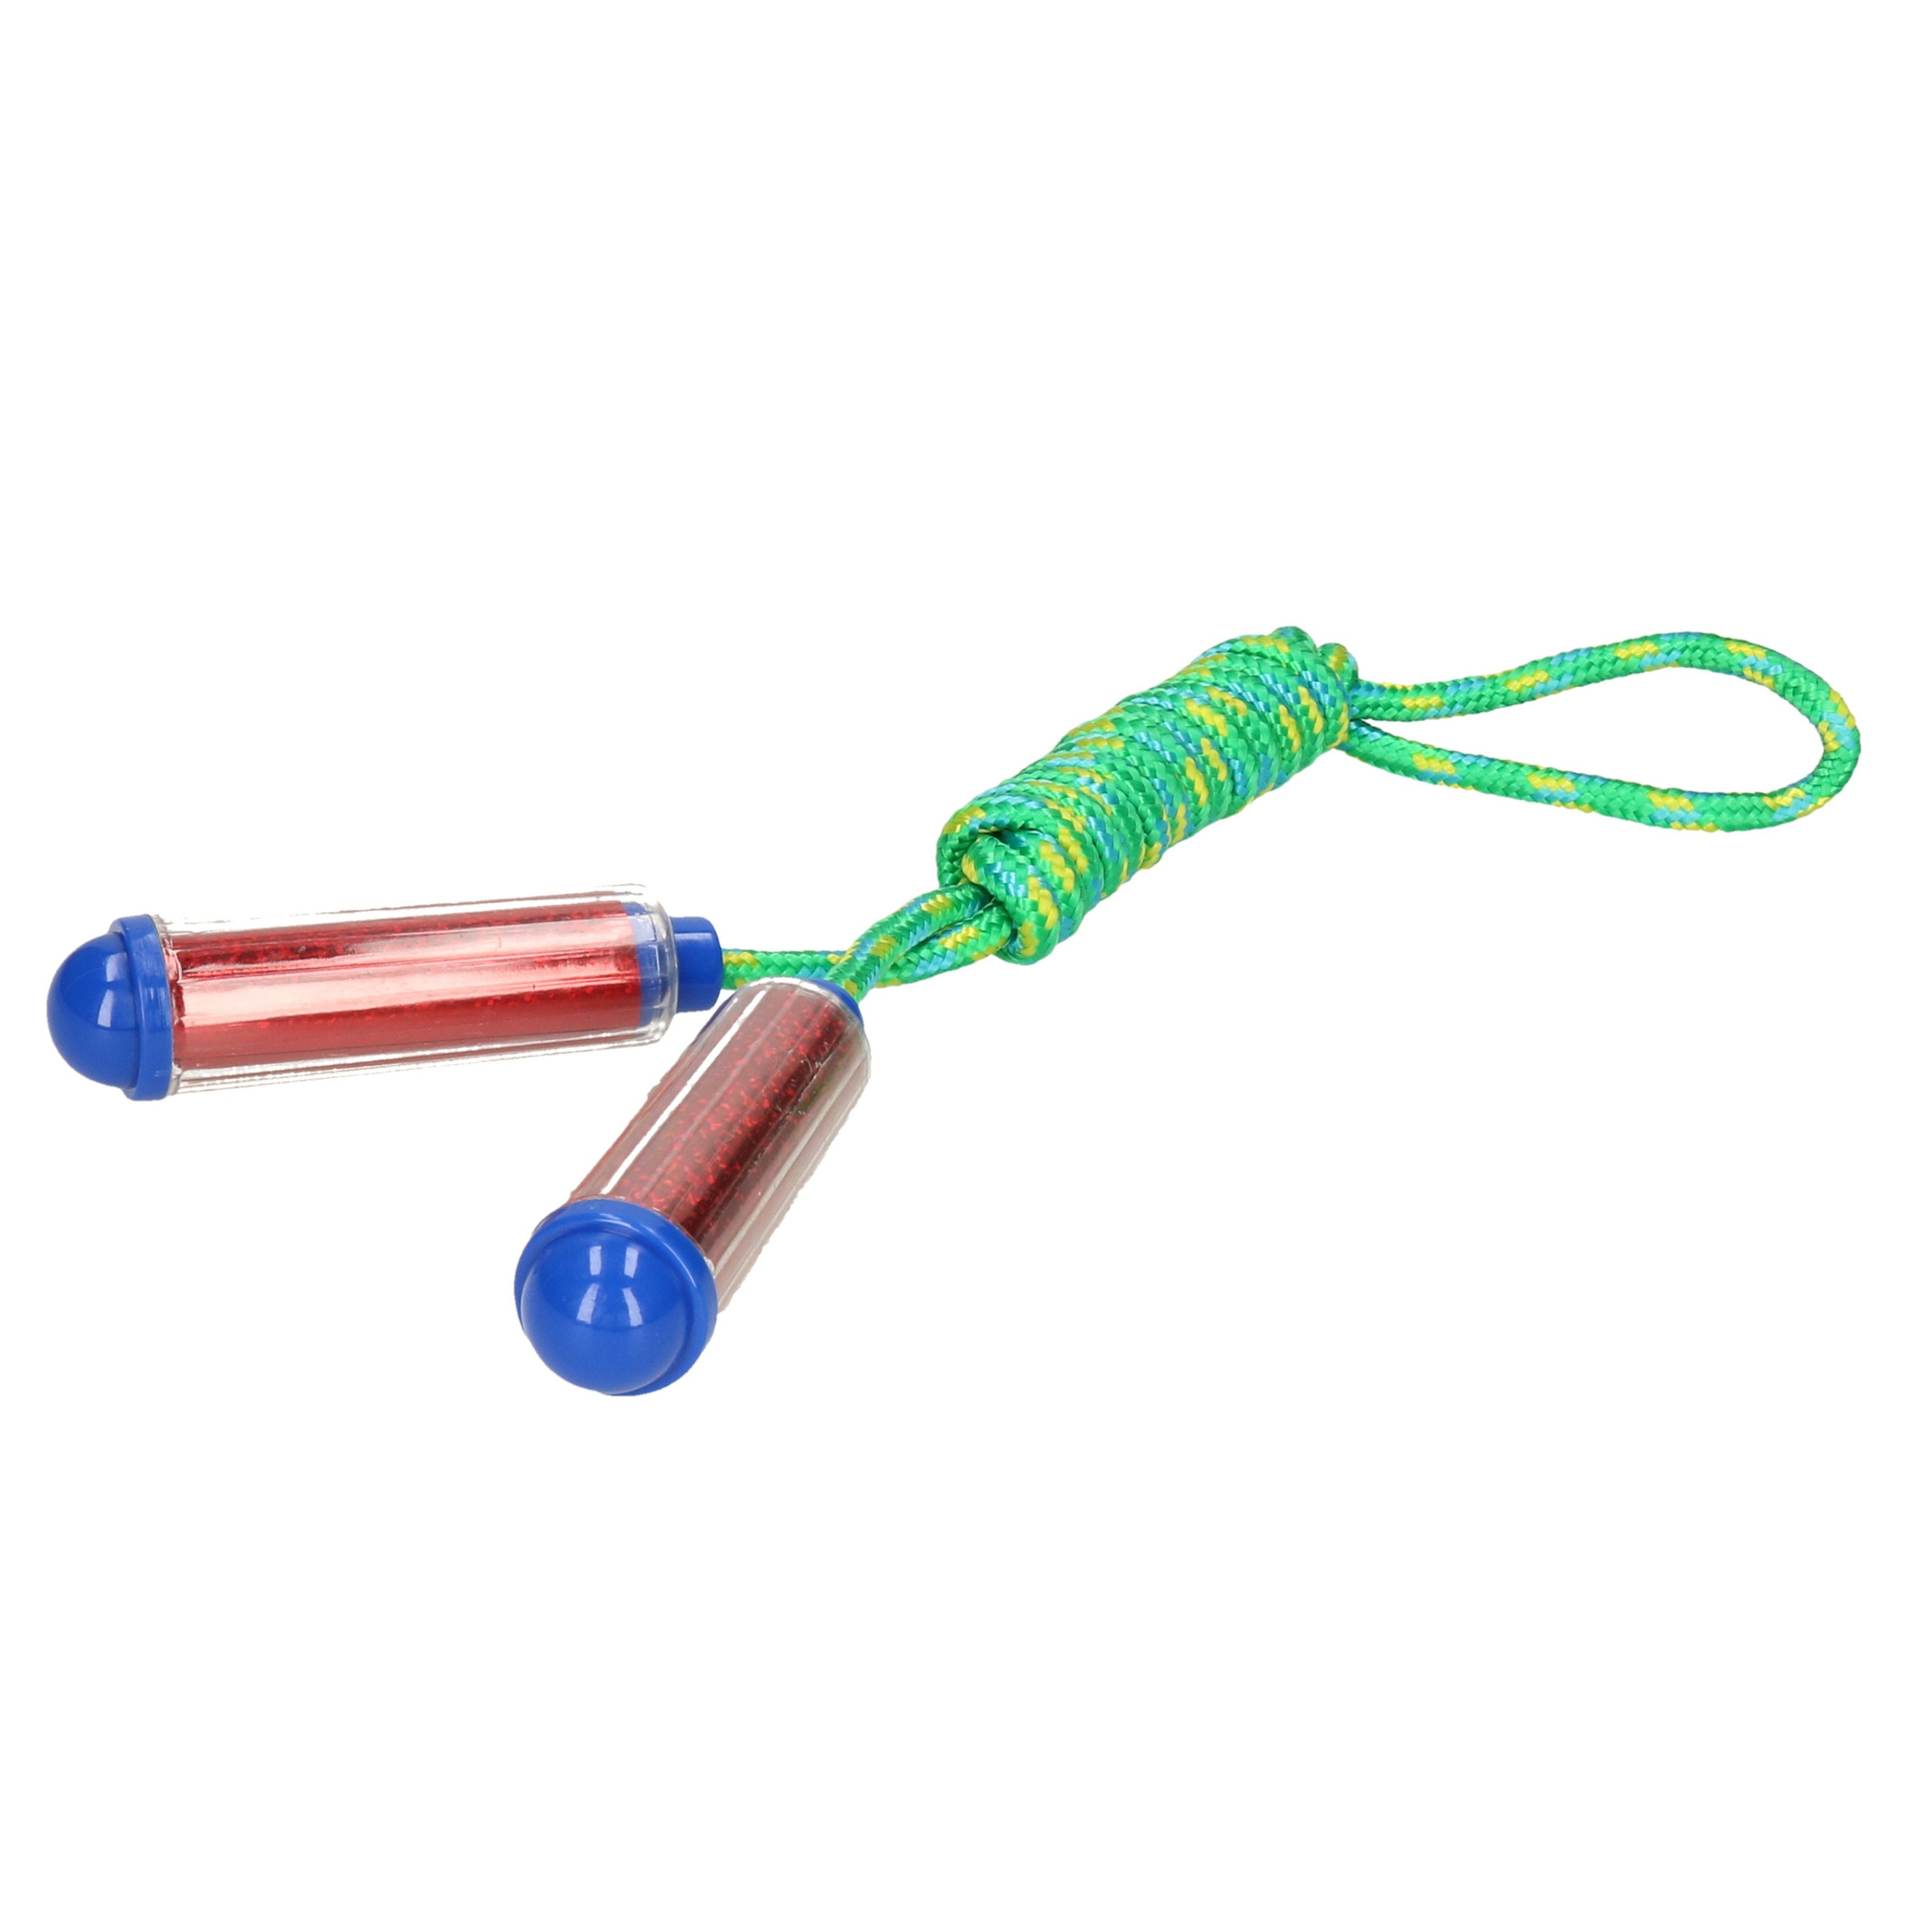 Springtouw - met kunststof handvatten - groen/rood - 210 cm - speelgoed